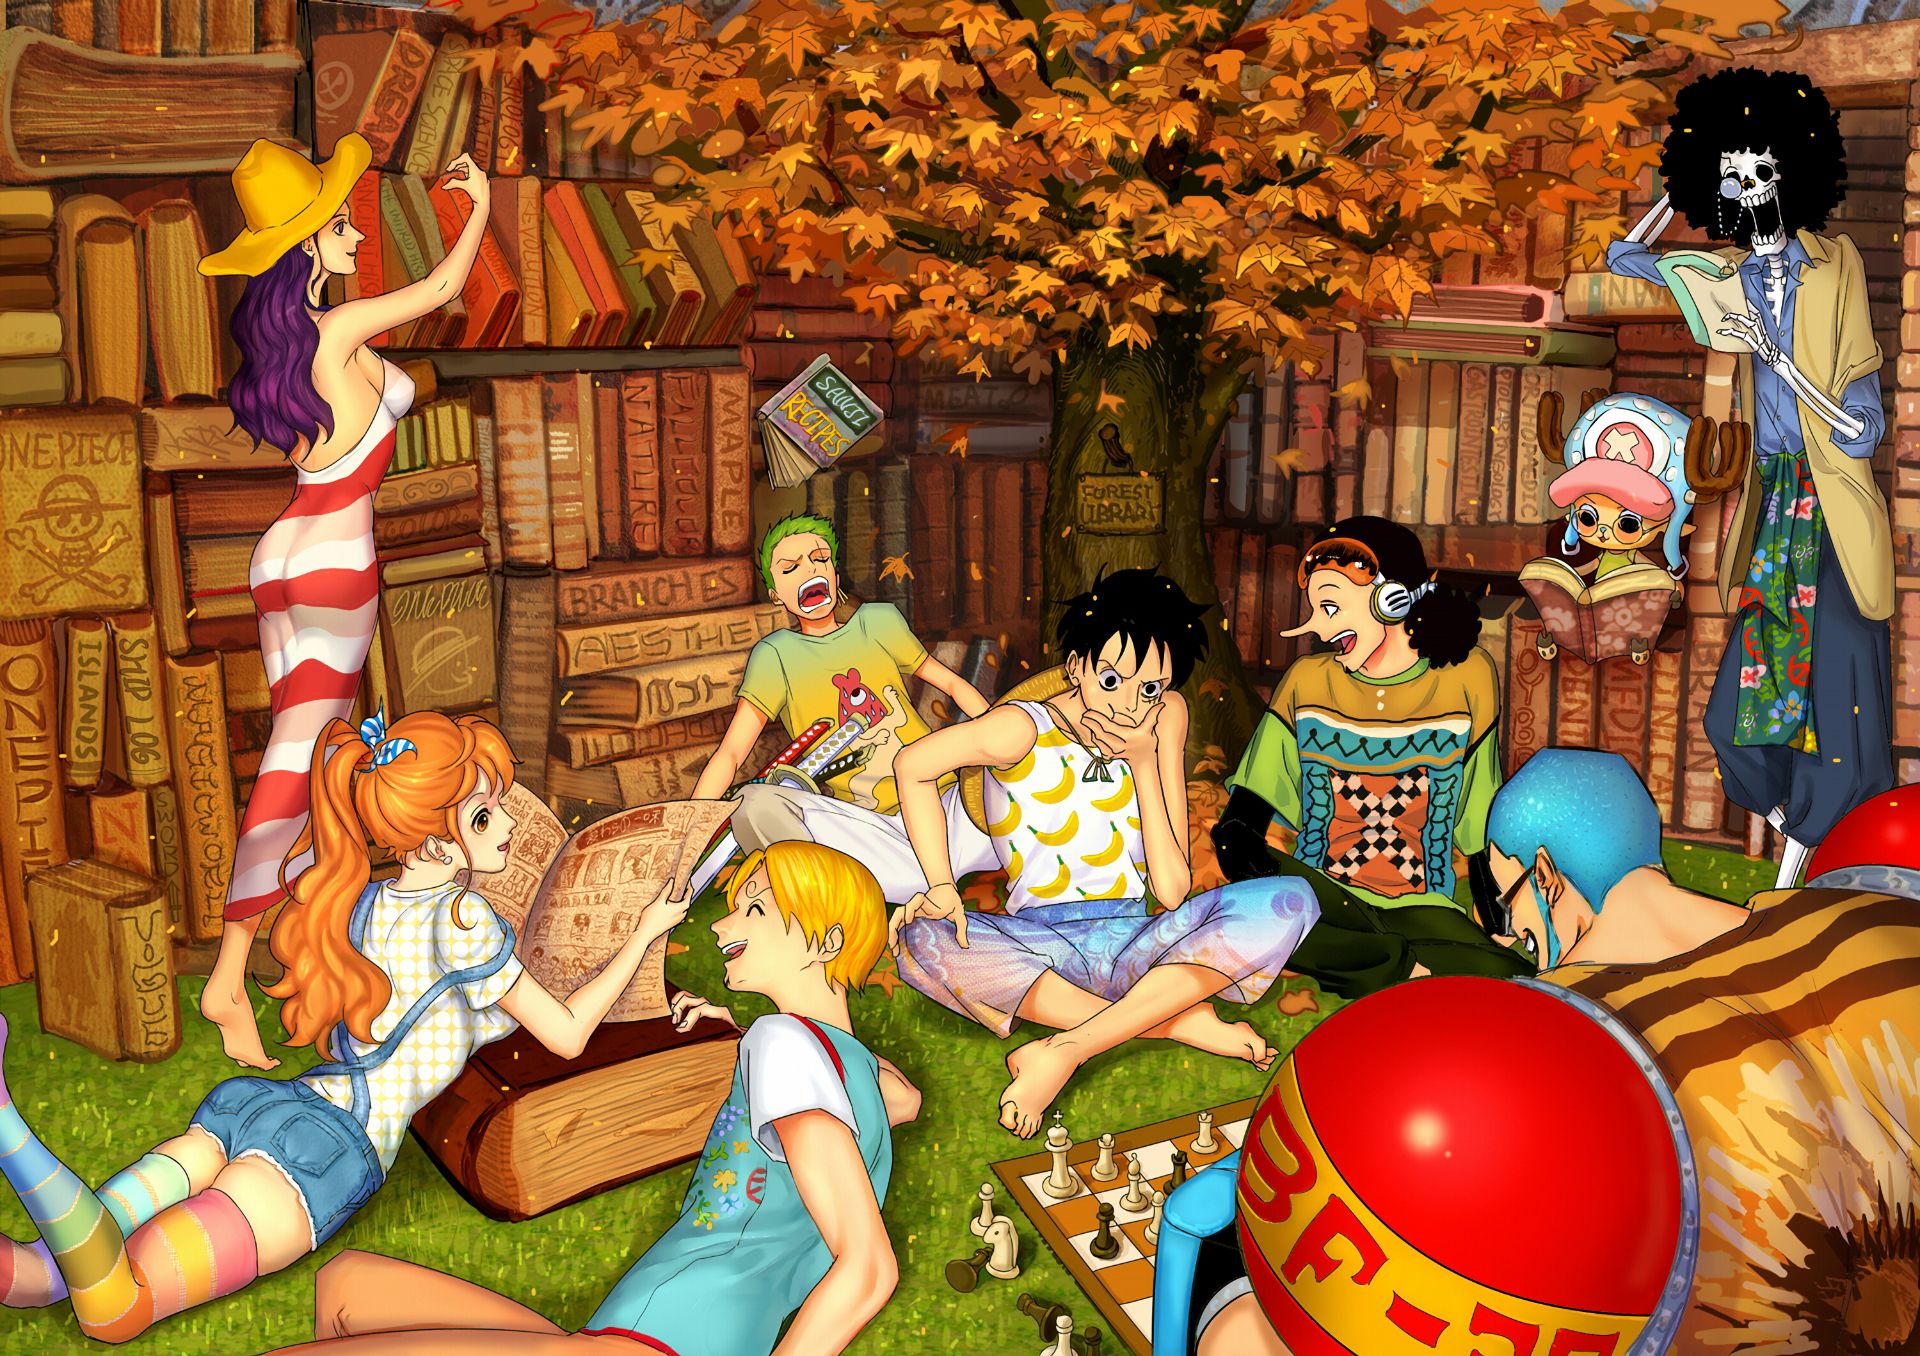 Baixar papel de parede para celular de Anime, One Piece, Tony Tony Chopper, Usopp (One Piece), Roronoa Zoro, Monkey D Luffy, Nami (One Piece), Sanji (One Piece), Brook (One Piece), Nico Robin, Franky (One Piece) gratuito.